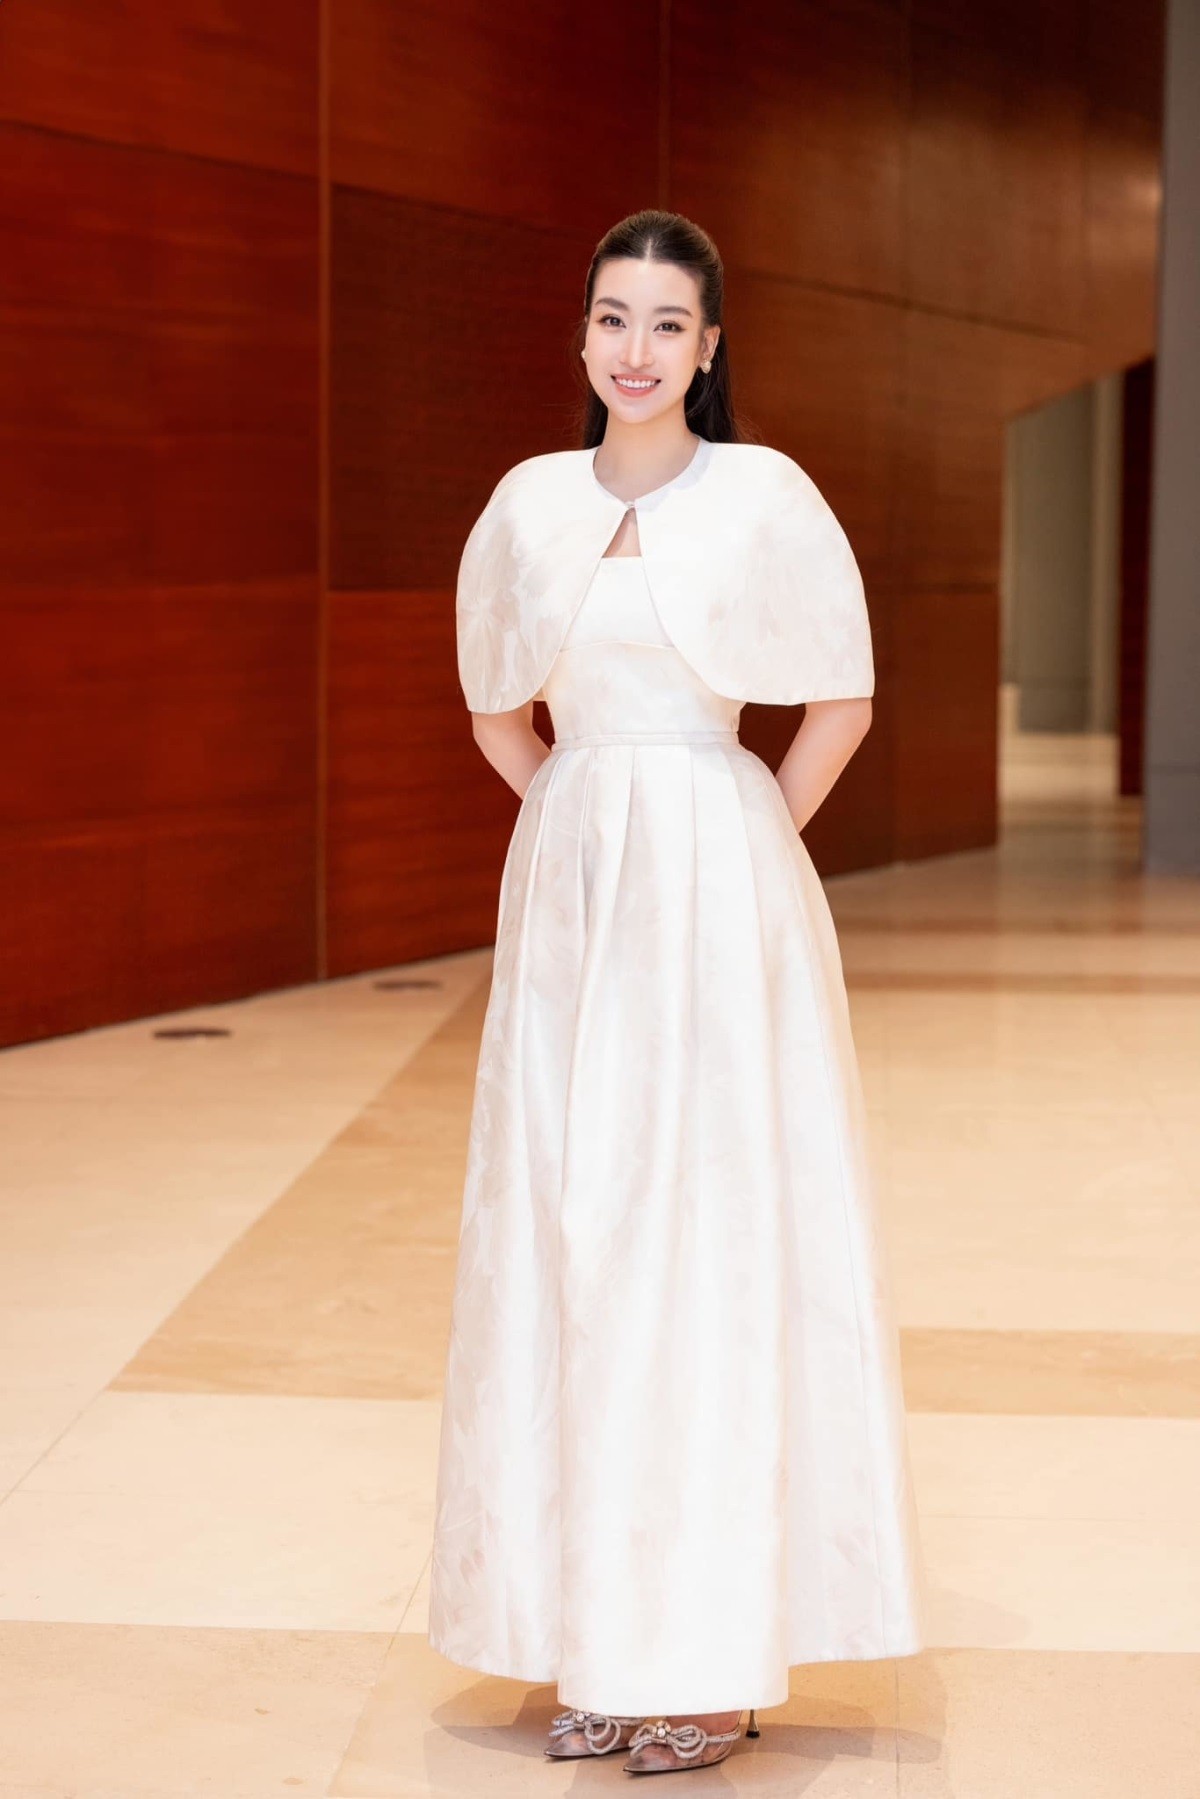 Hoa hậu Đỗ Mỹ Linh dịu dàng cùng phong cách thời trang đơn sắc nhẹ nhàng